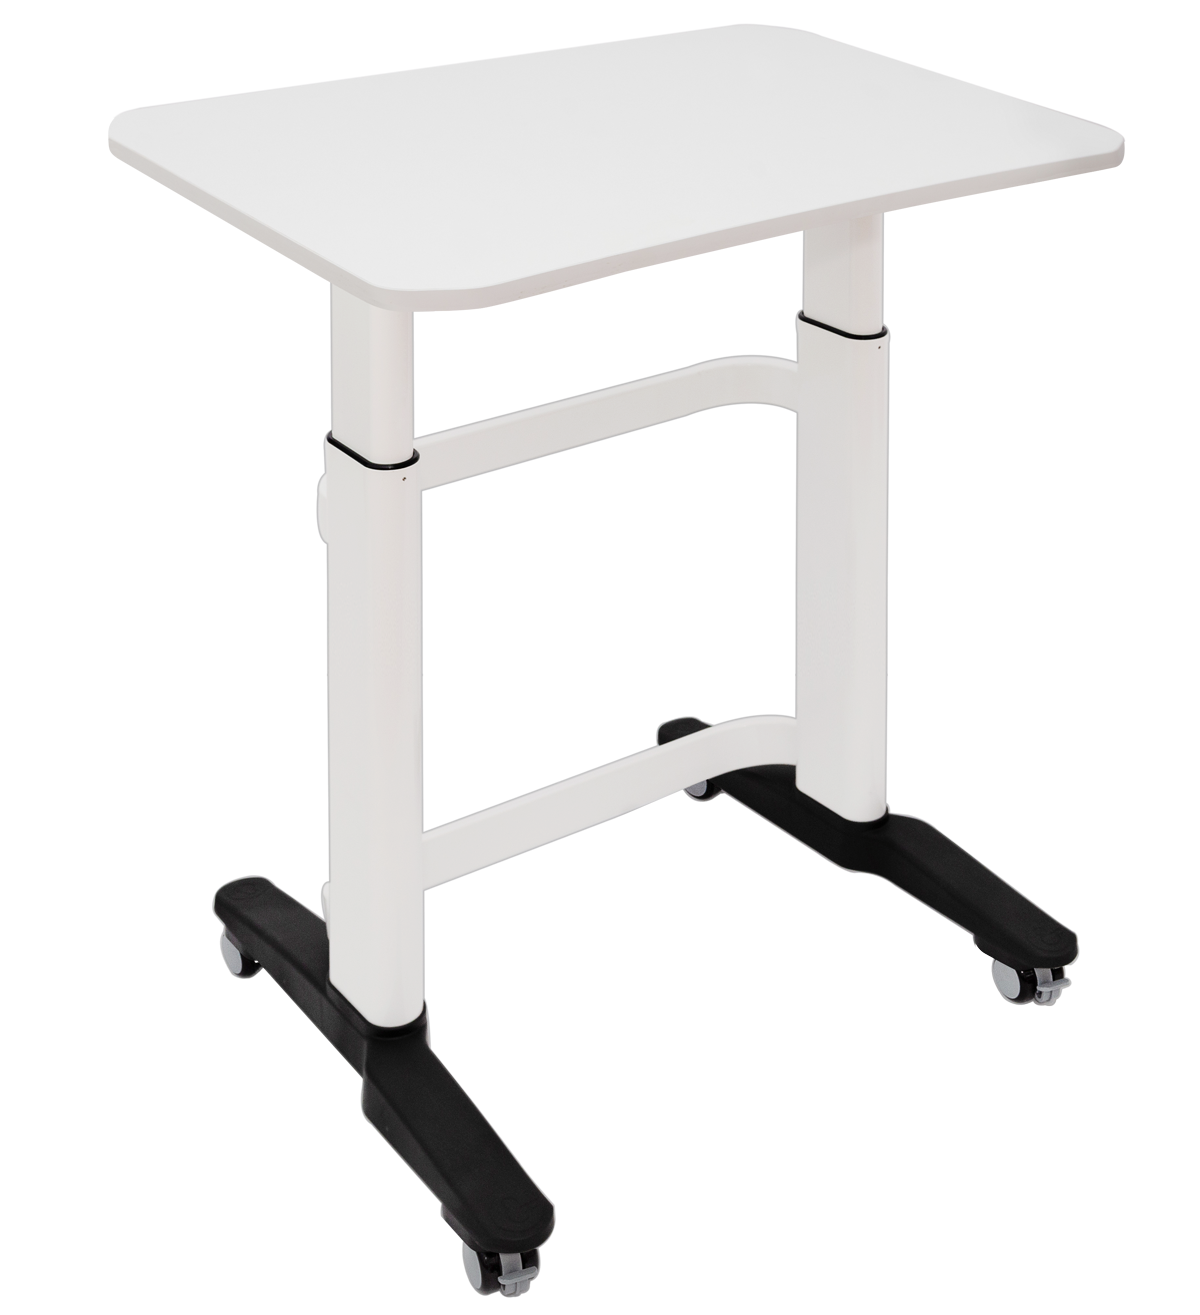 Amperstand-Large-Teacher Desk-75mm Castors